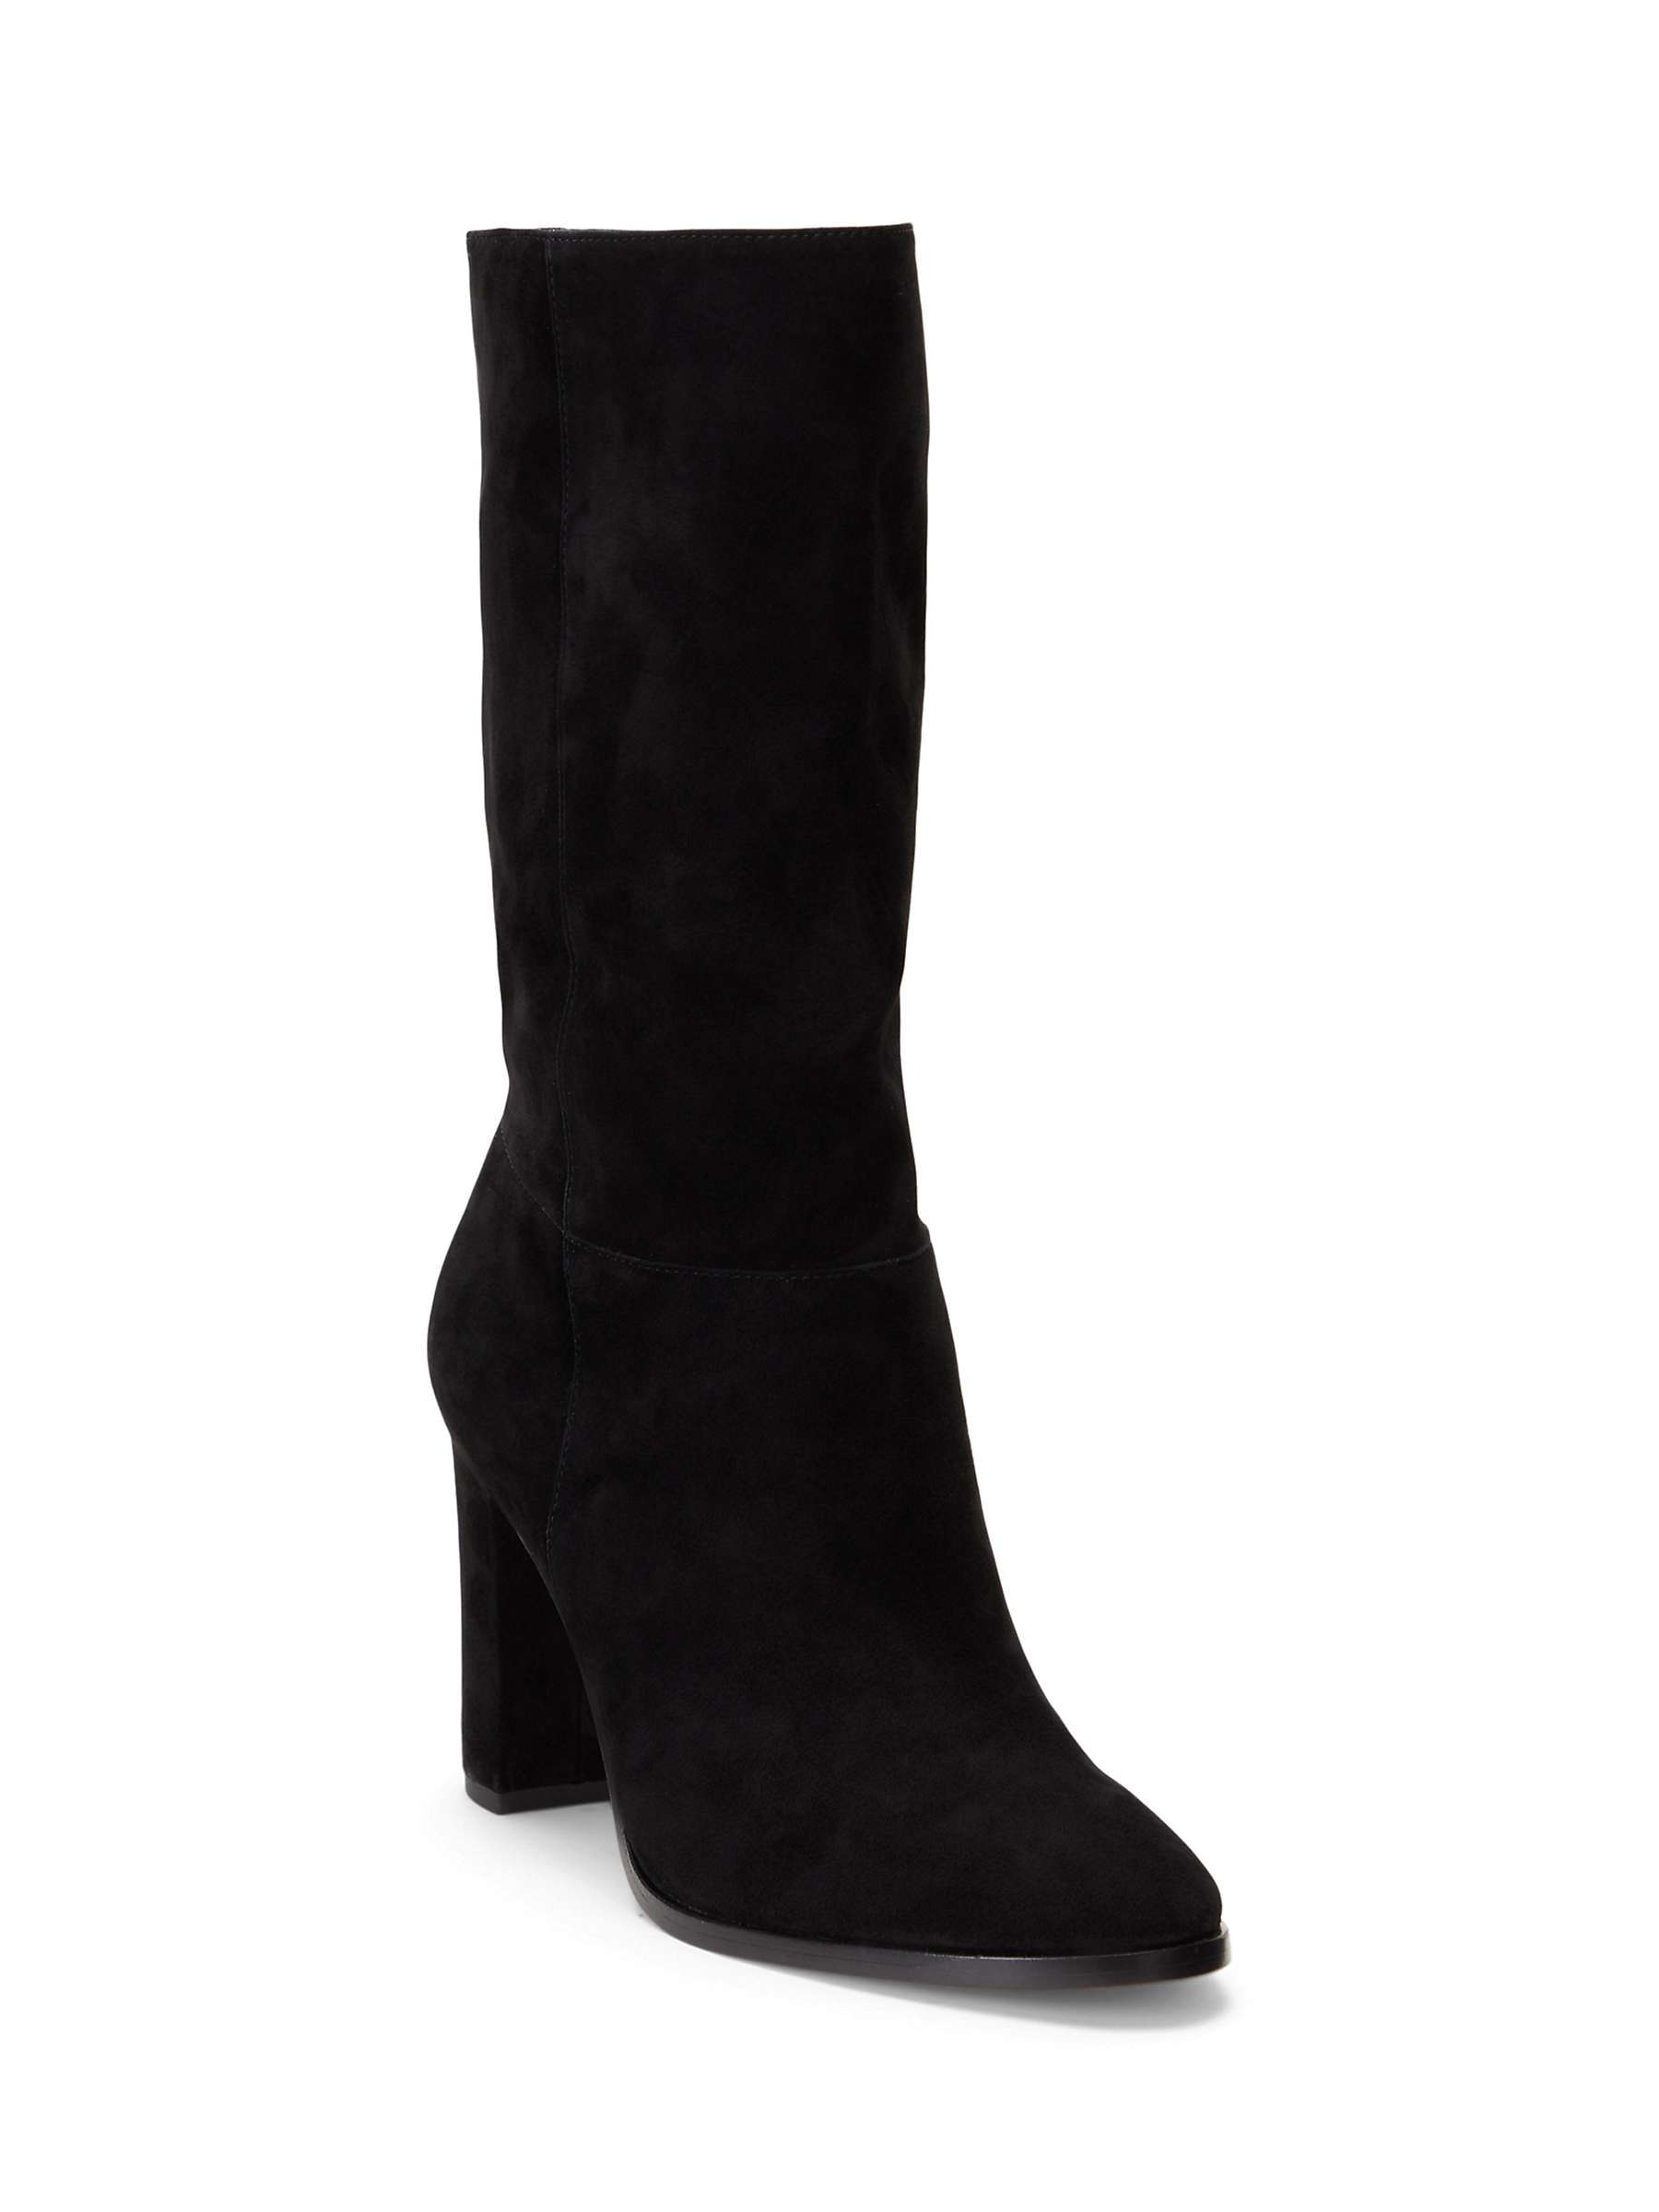 Buy Lauren Ralph Lauren Artizan Suede Heeled Boots Online at johnlewis.com